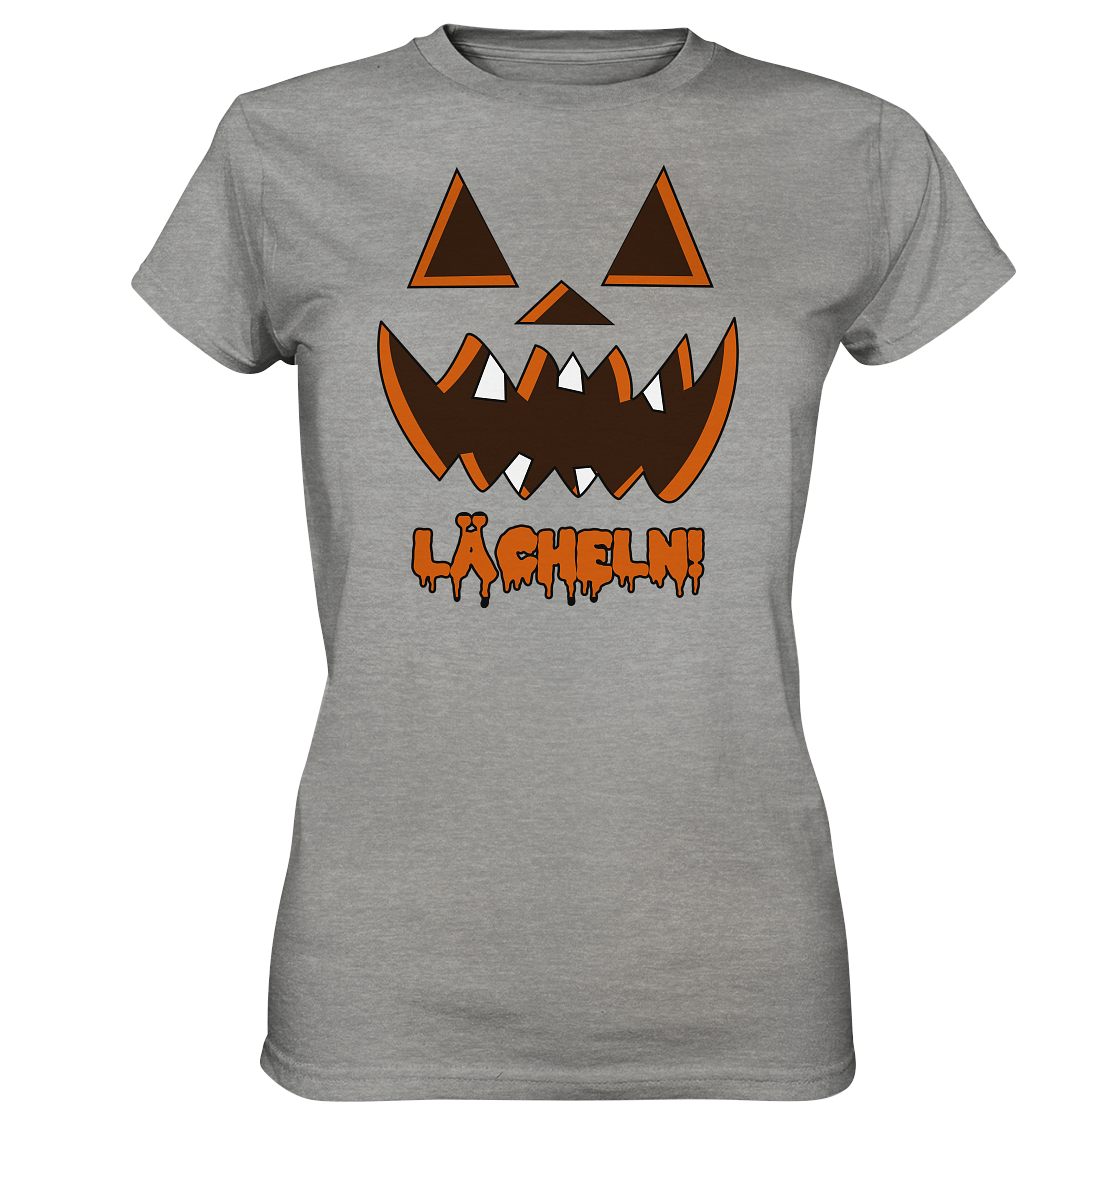 Halloween: Lächeln! - Geile Sprüche, Geile Designs - Ladies Premium Shirt